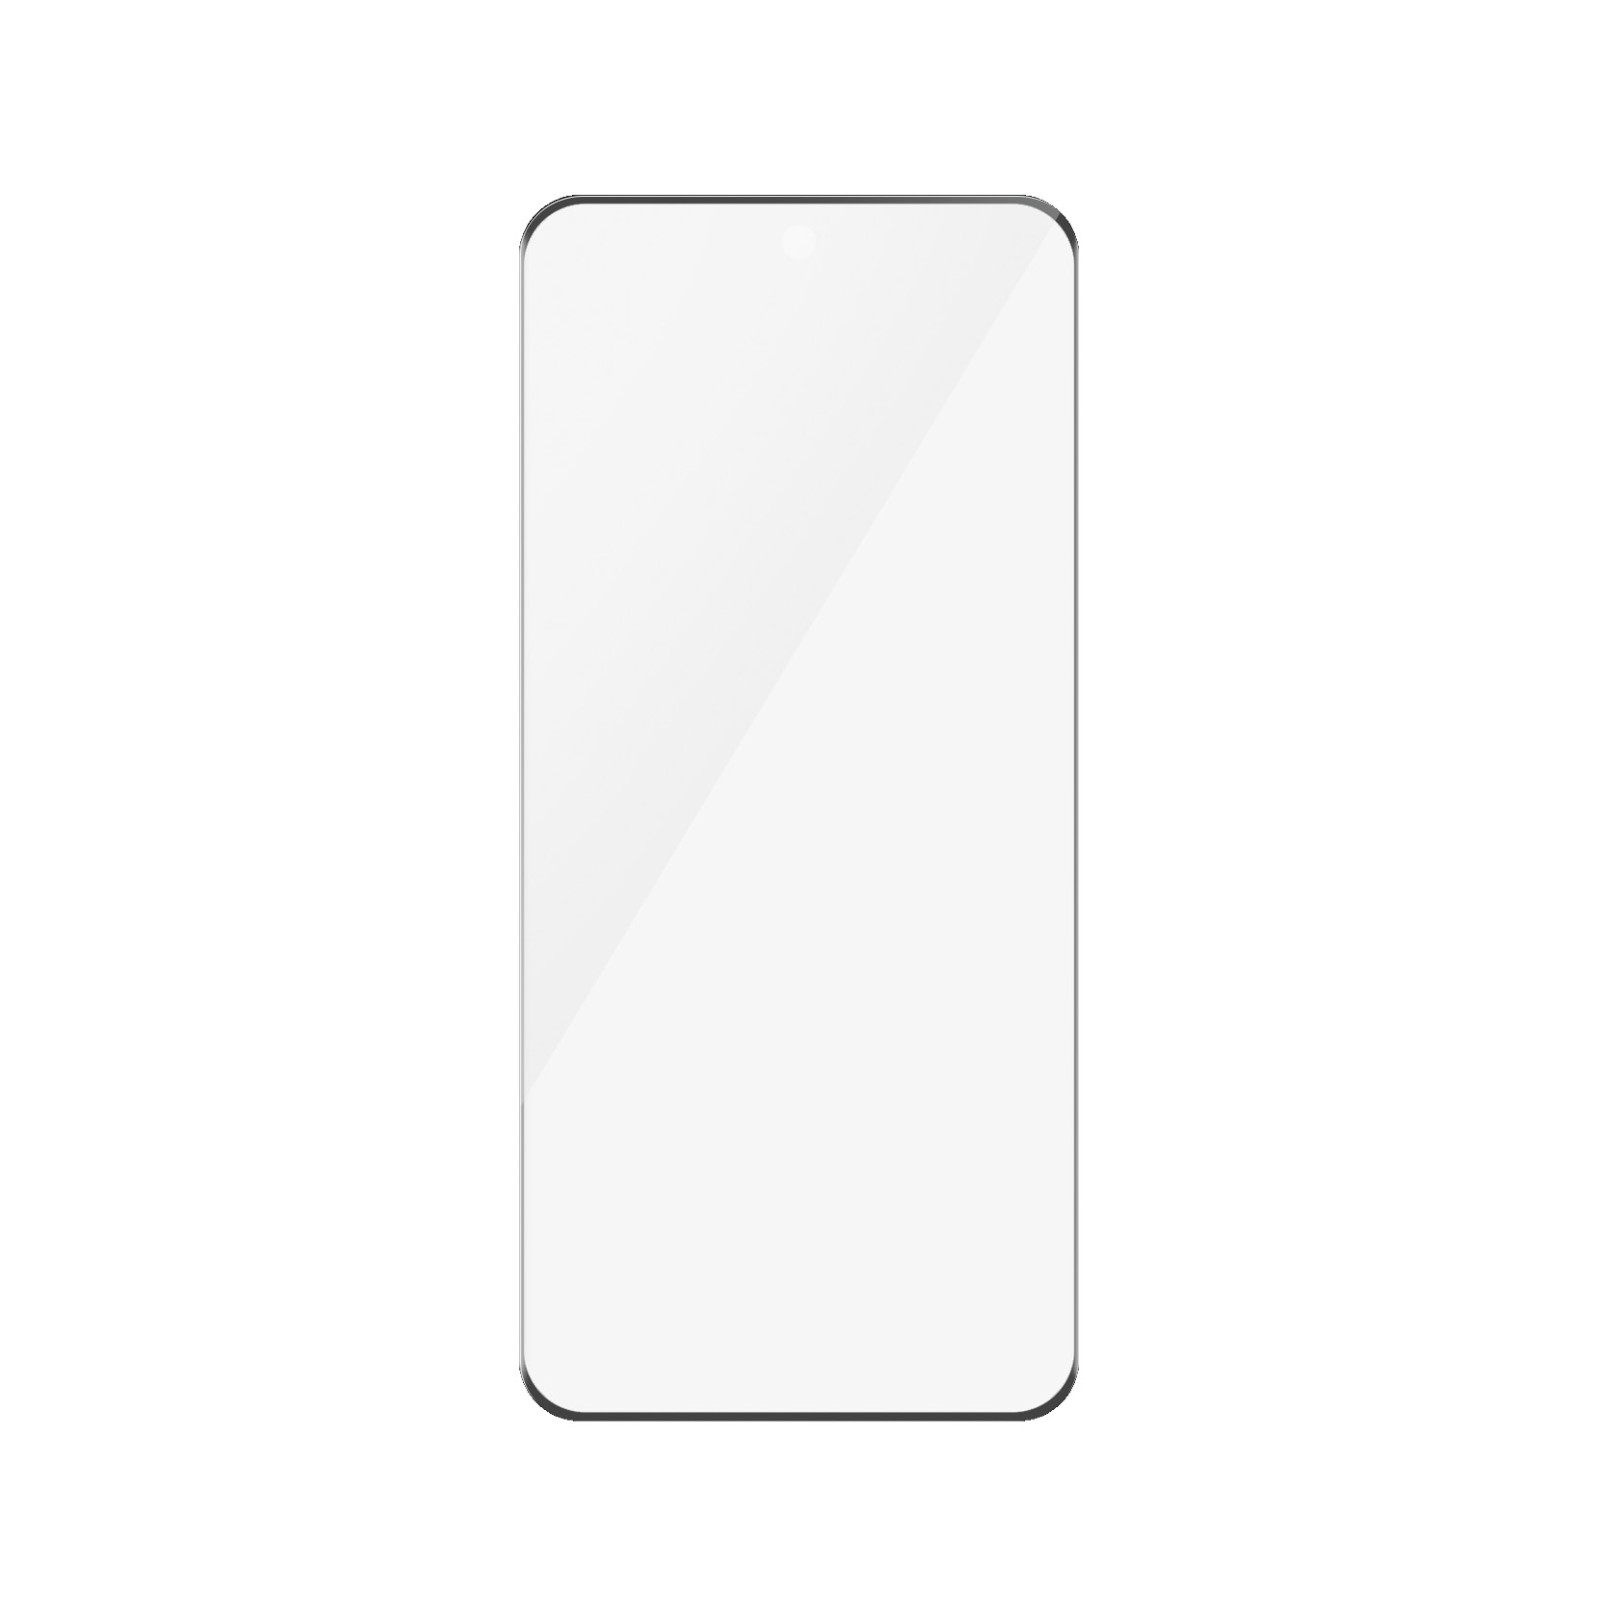 Стъклен протектор PanzerGlass за Xiaomi 14 Ultra, UWF, Черен